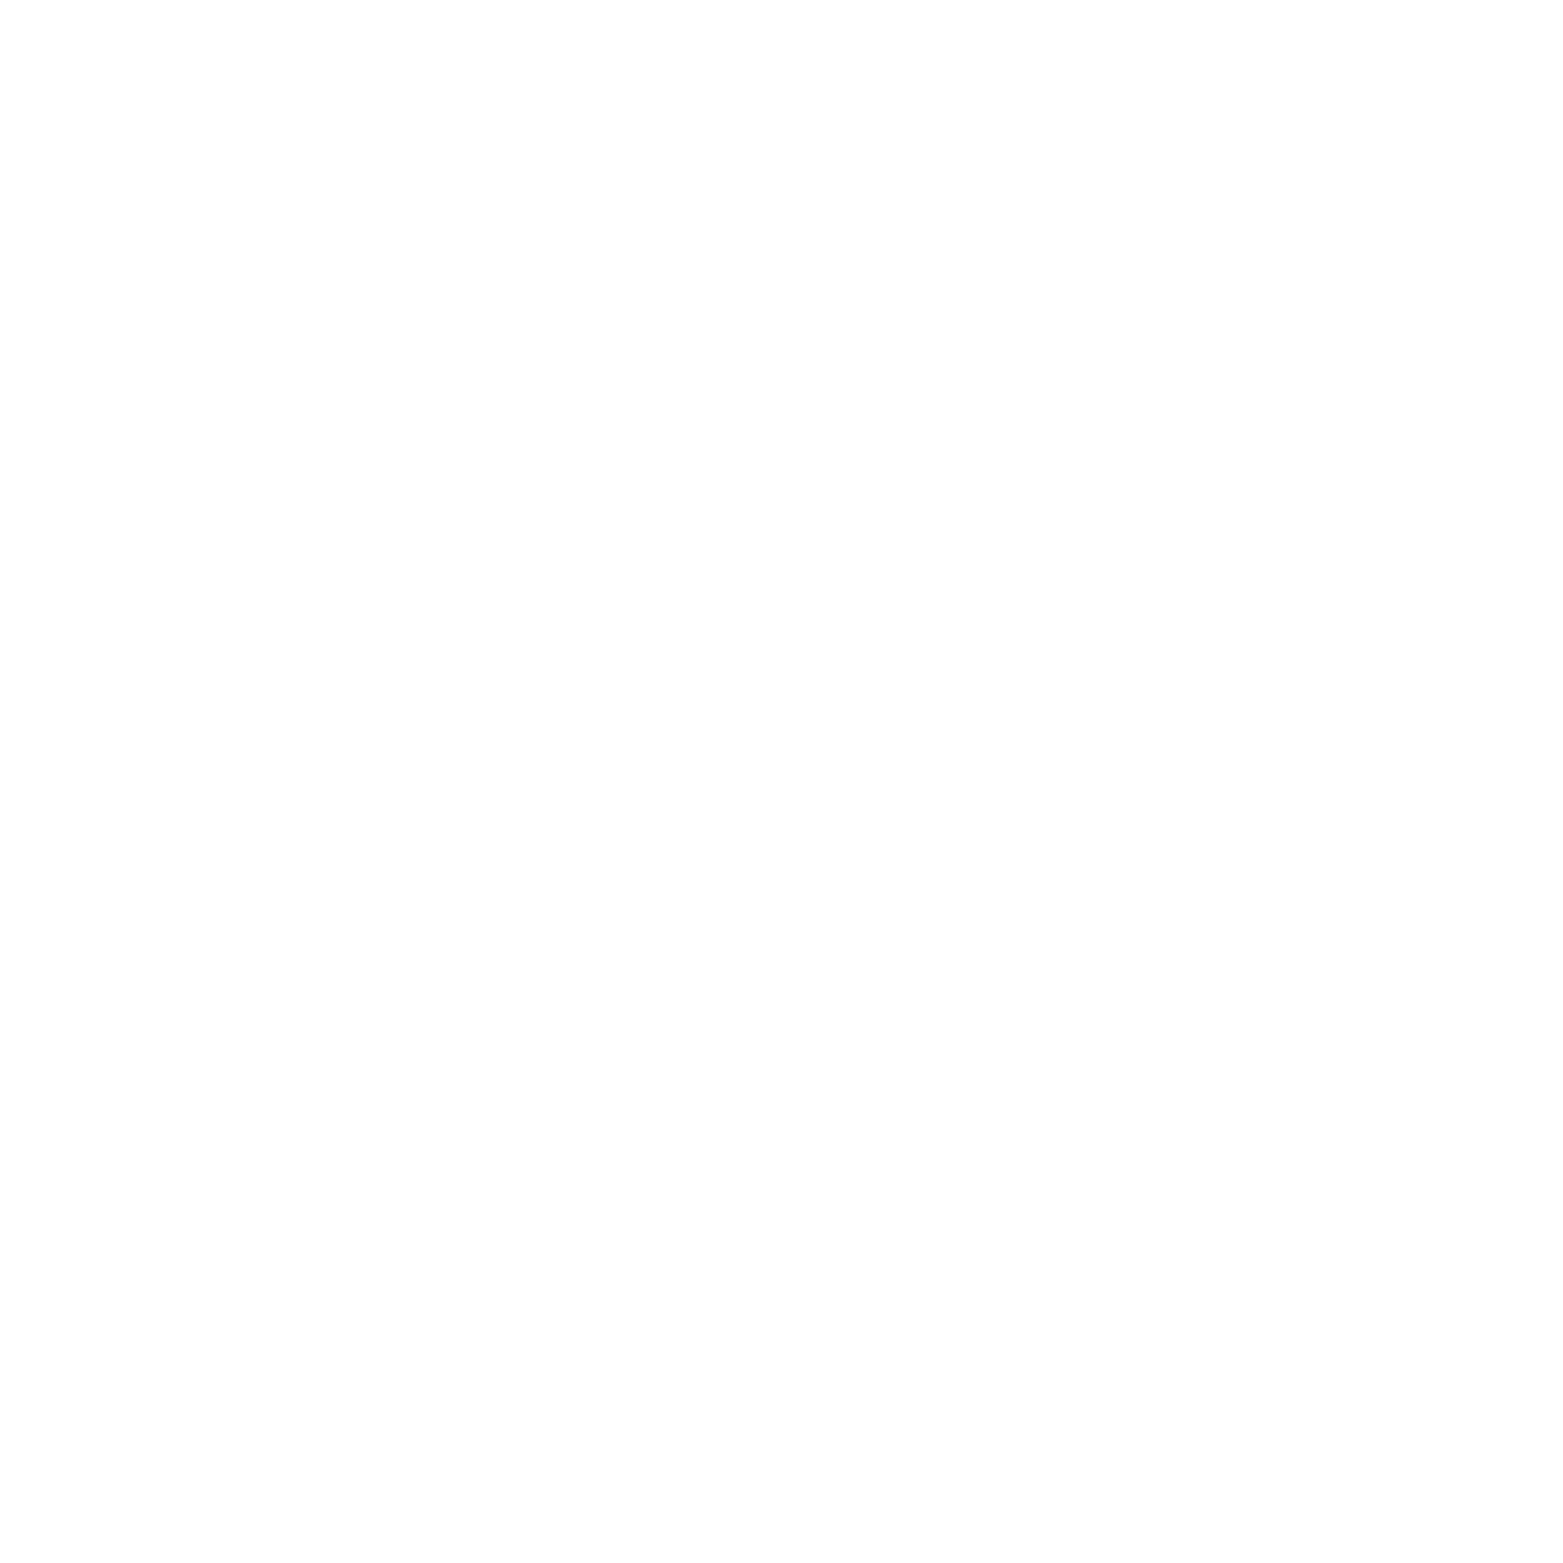 ALVAST